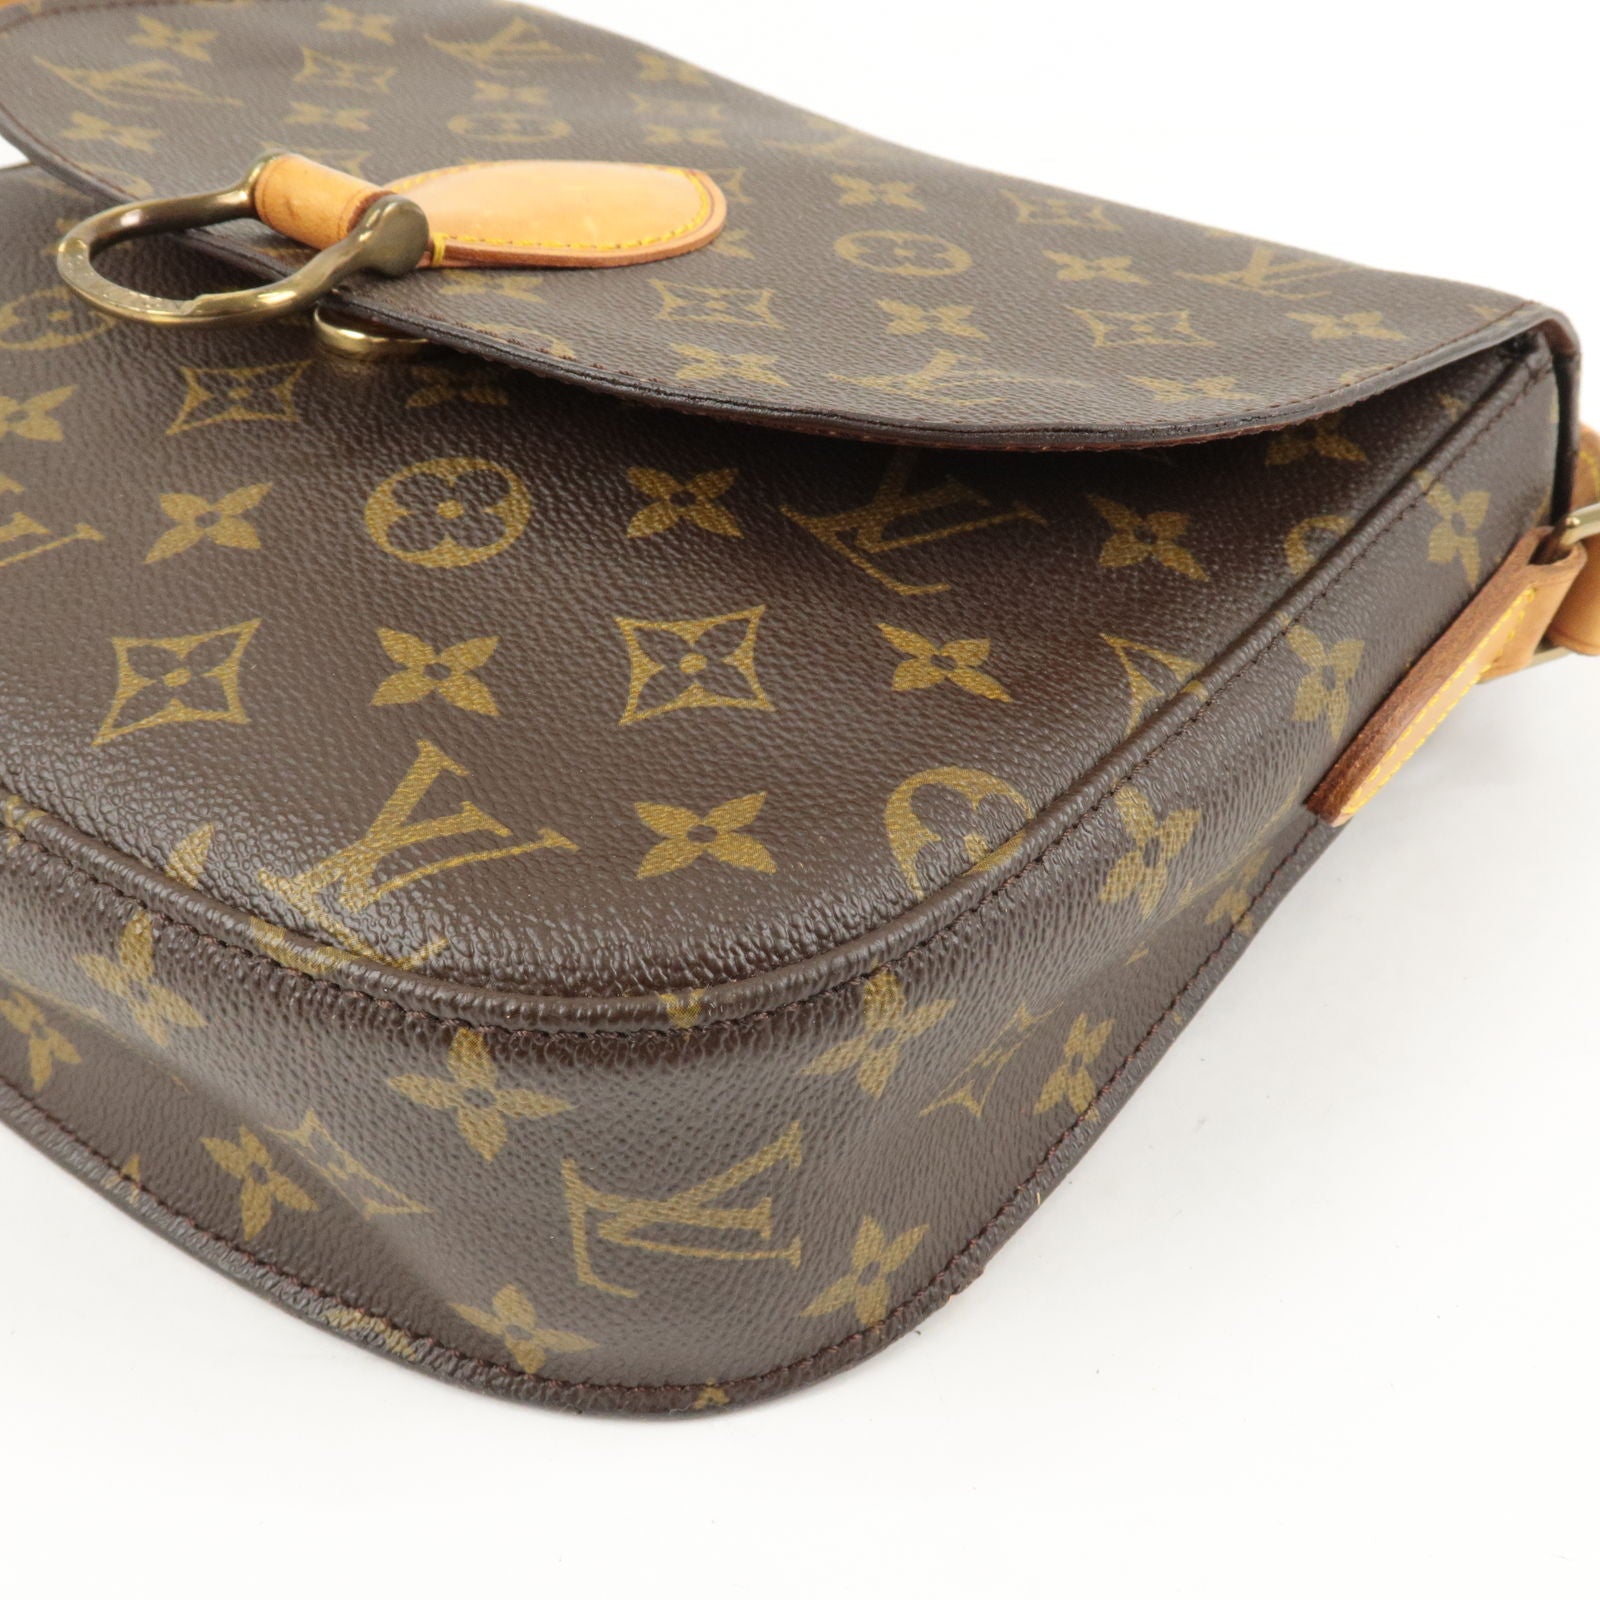 Louis Vuitton, Bags, Authentic Louis Vuitton Crossbody Bag Saint Cloud Gm  Used Lv Handbag Vintage